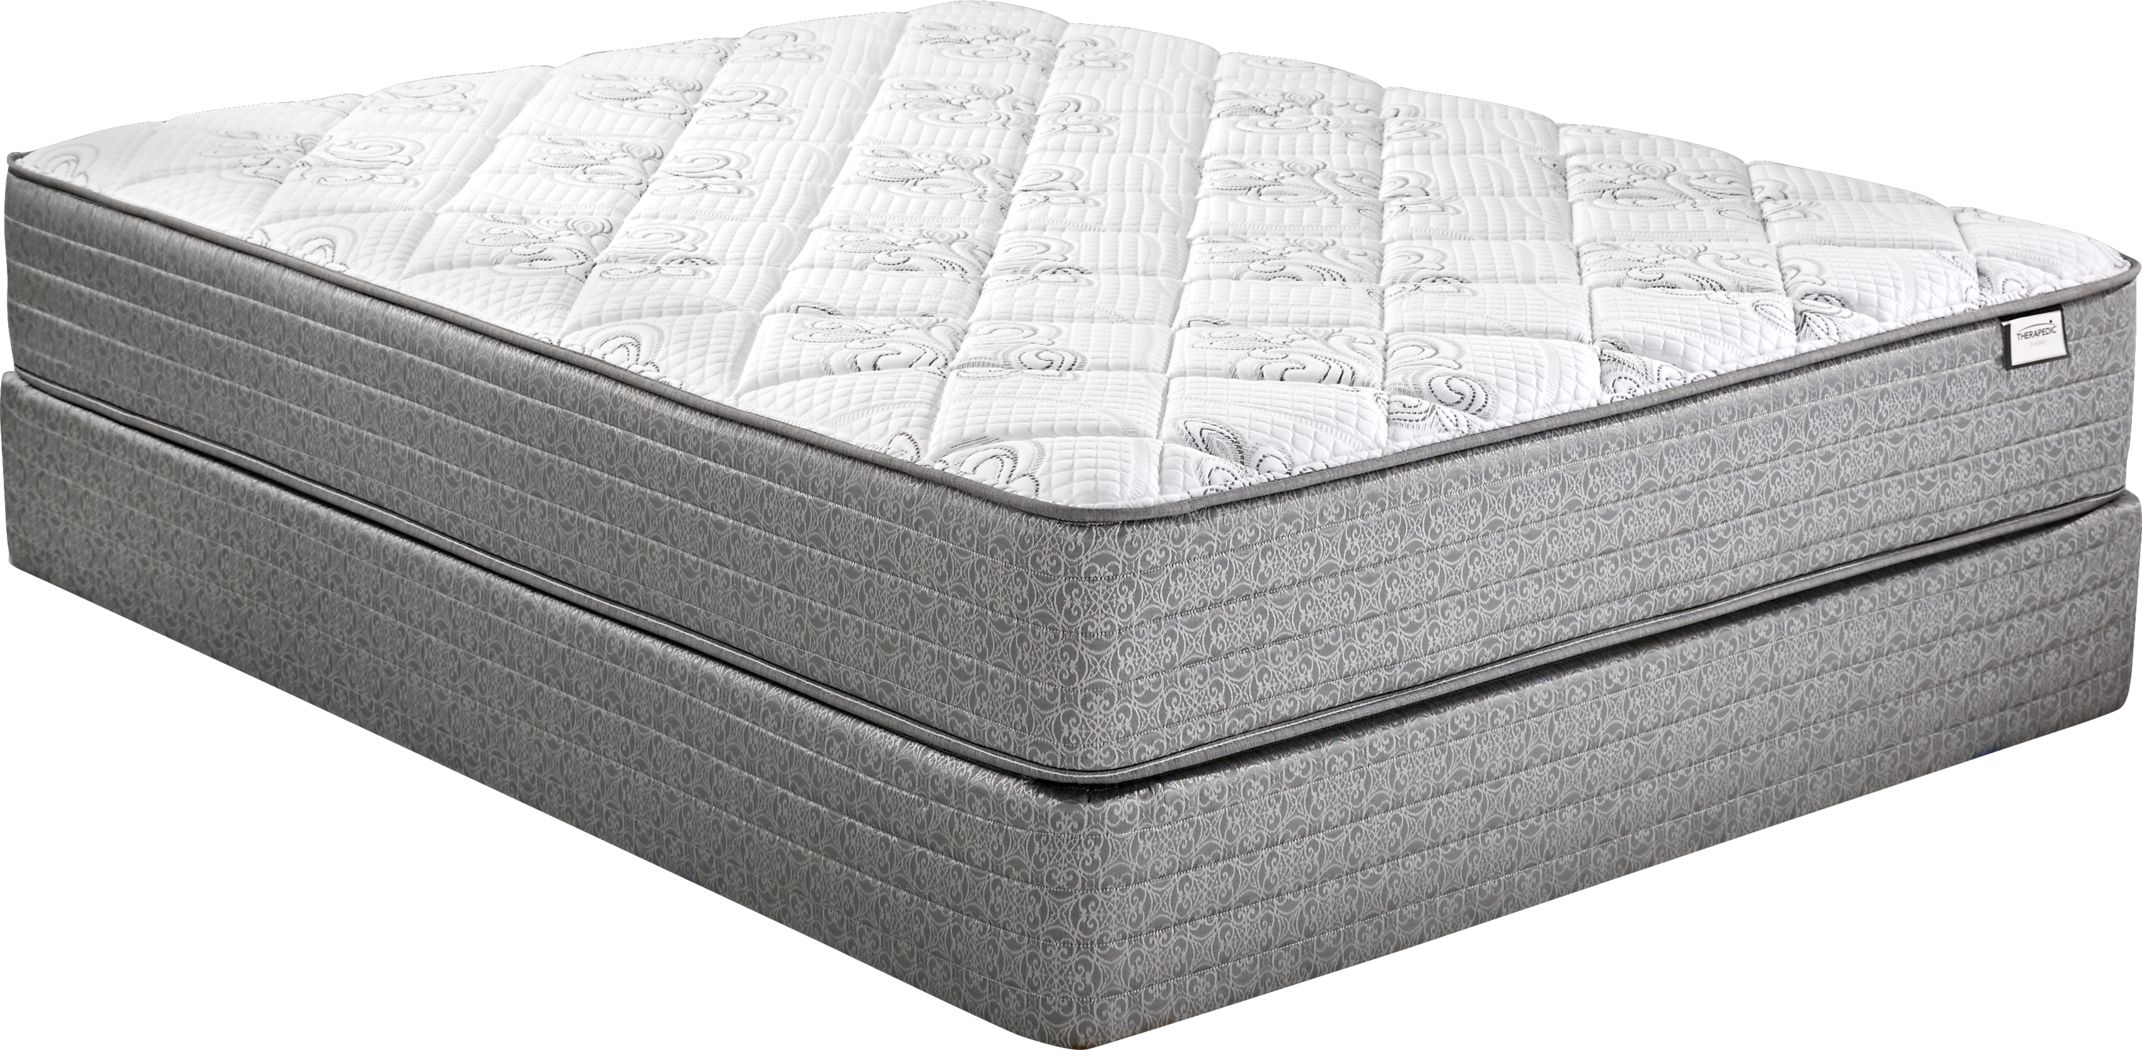 therapedic everest queen mattress set reviews